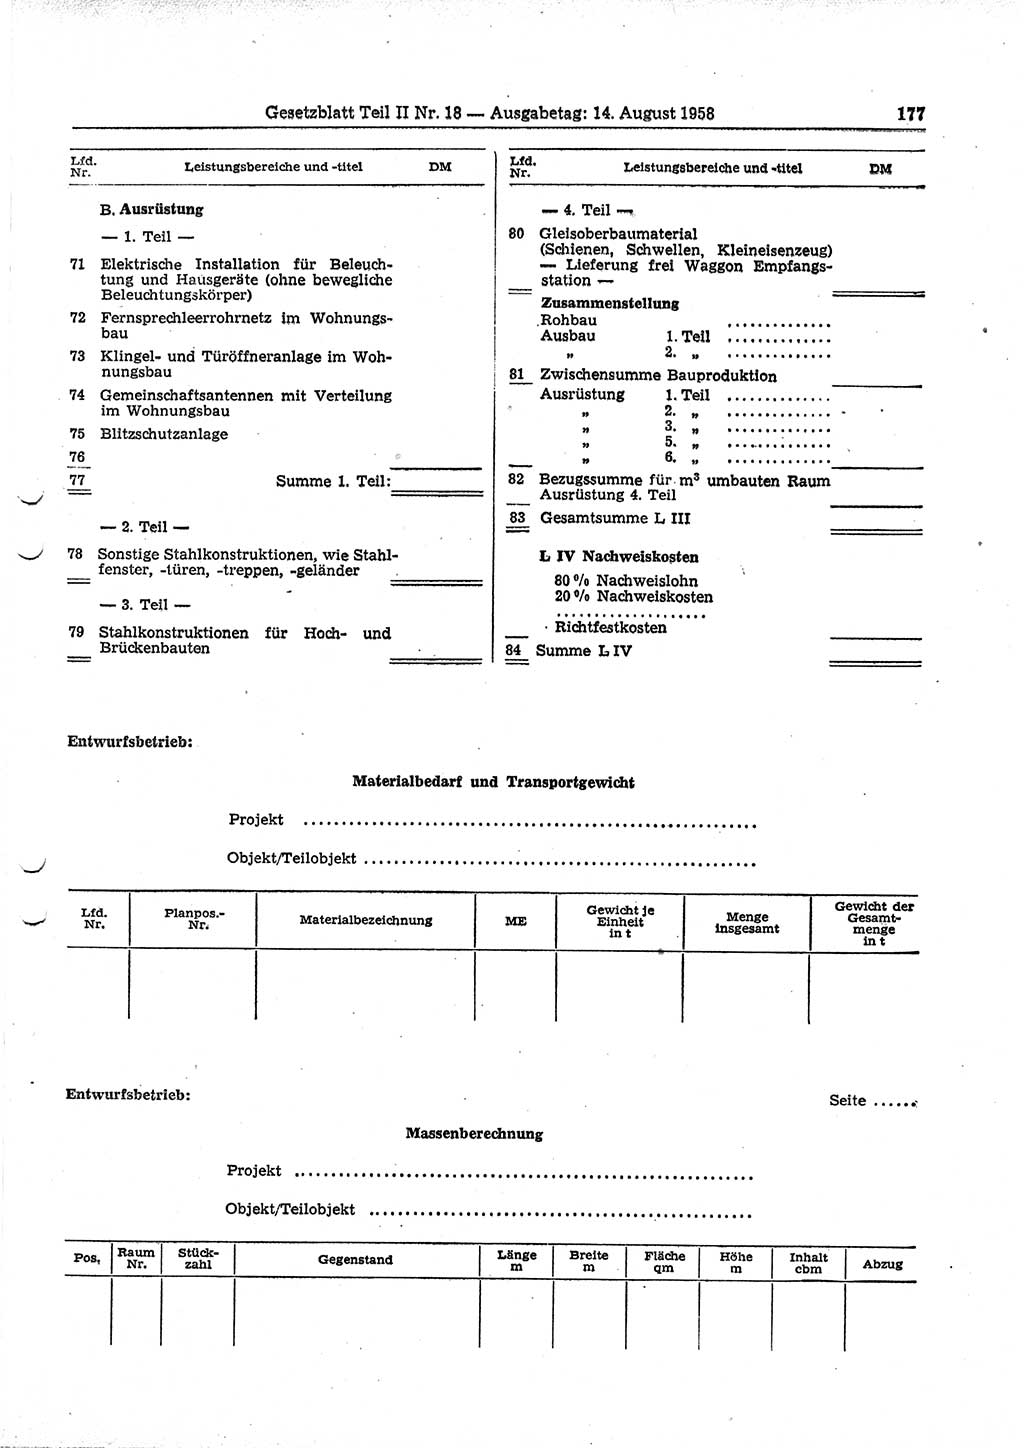 Gesetzblatt (GBl.) der Deutschen Demokratischen Republik (DDR) Teil ⅠⅠ 1958, Seite 177 (GBl. DDR ⅠⅠ 1958, S. 177)